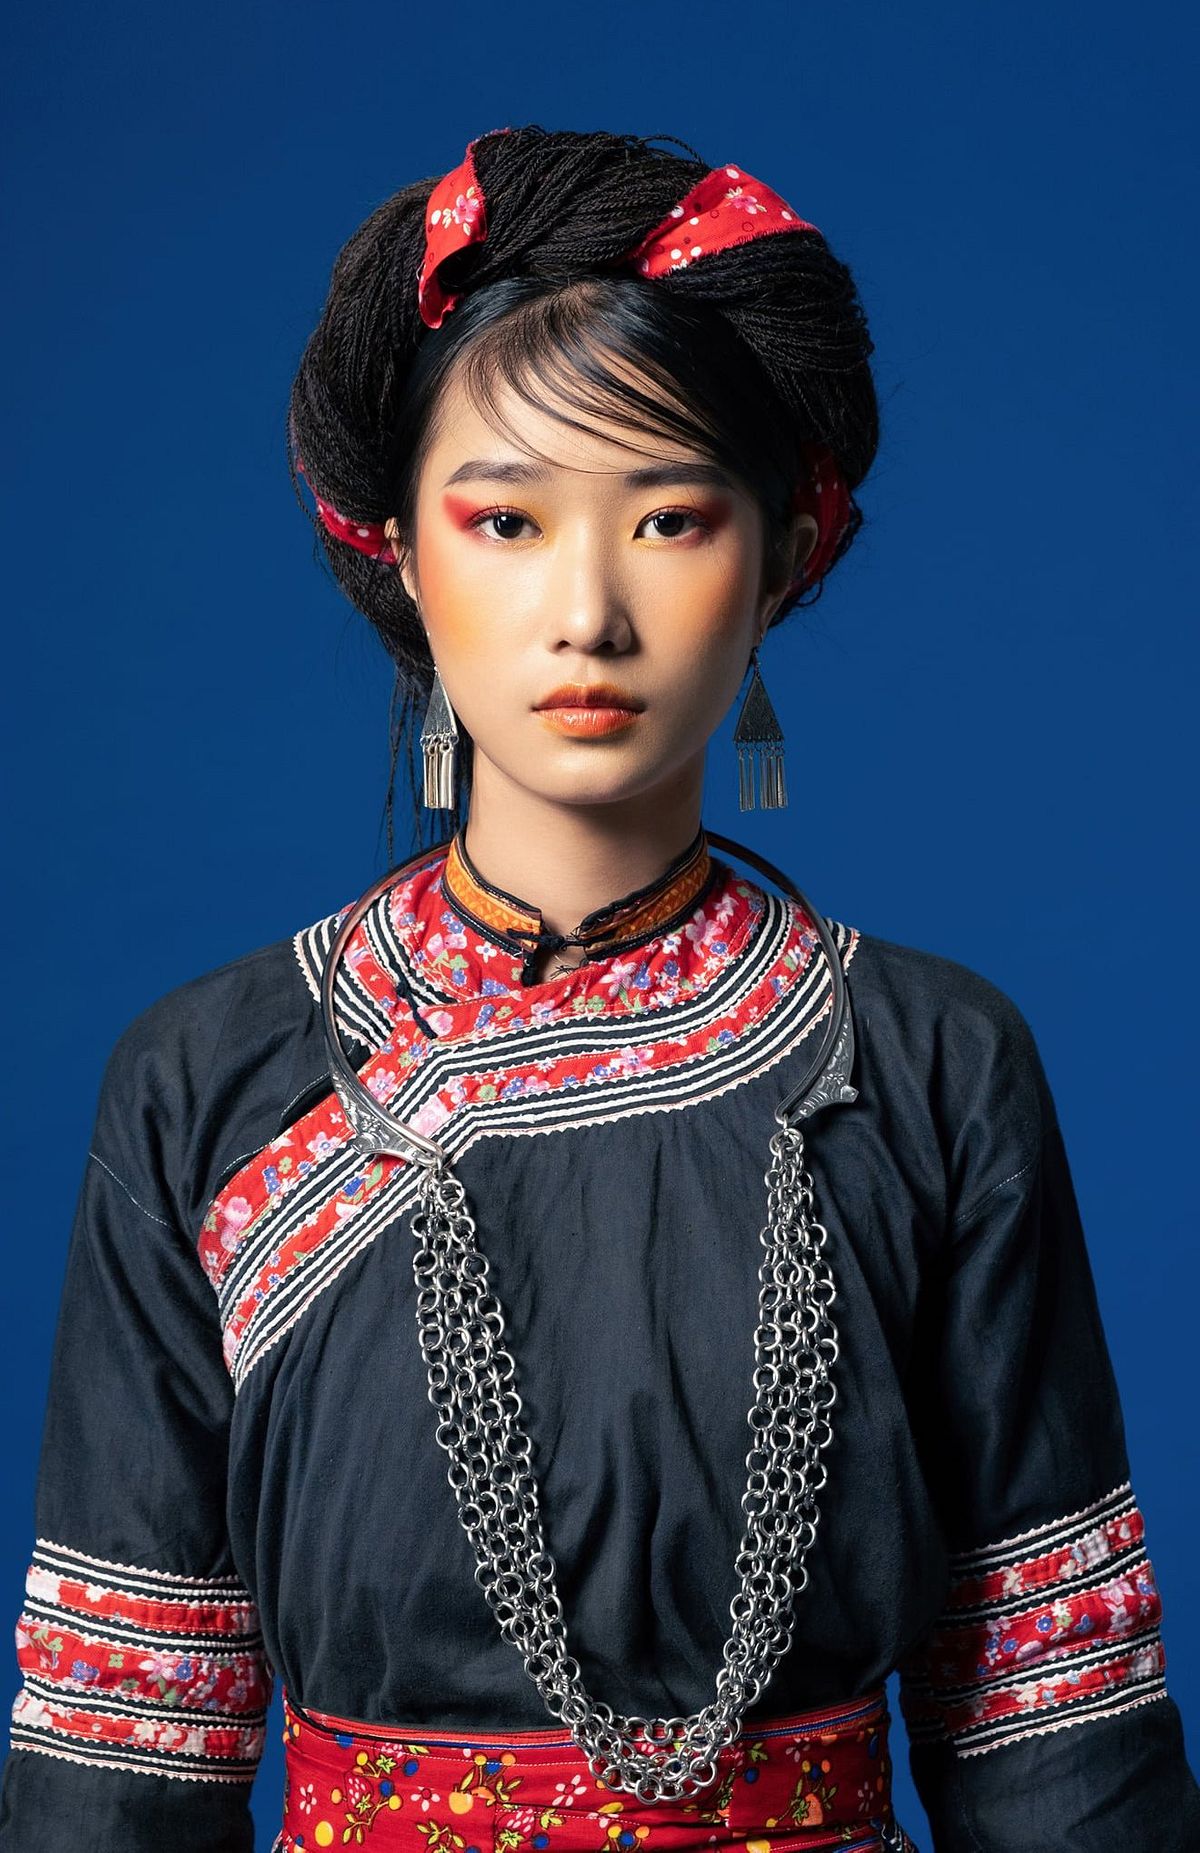 Đến với thời trang H\'Mông, bạn sẽ được khám phá vẻ đẹp gợi cảm từ những bộ trang phục mang hơi thở tự nhiên và văn hóa độc đáo của dân tộc này. Hãy đắm mình vào không gian thời trang rực rỡ để tìm kiếm phong cách riêng và sáng tạo mới.